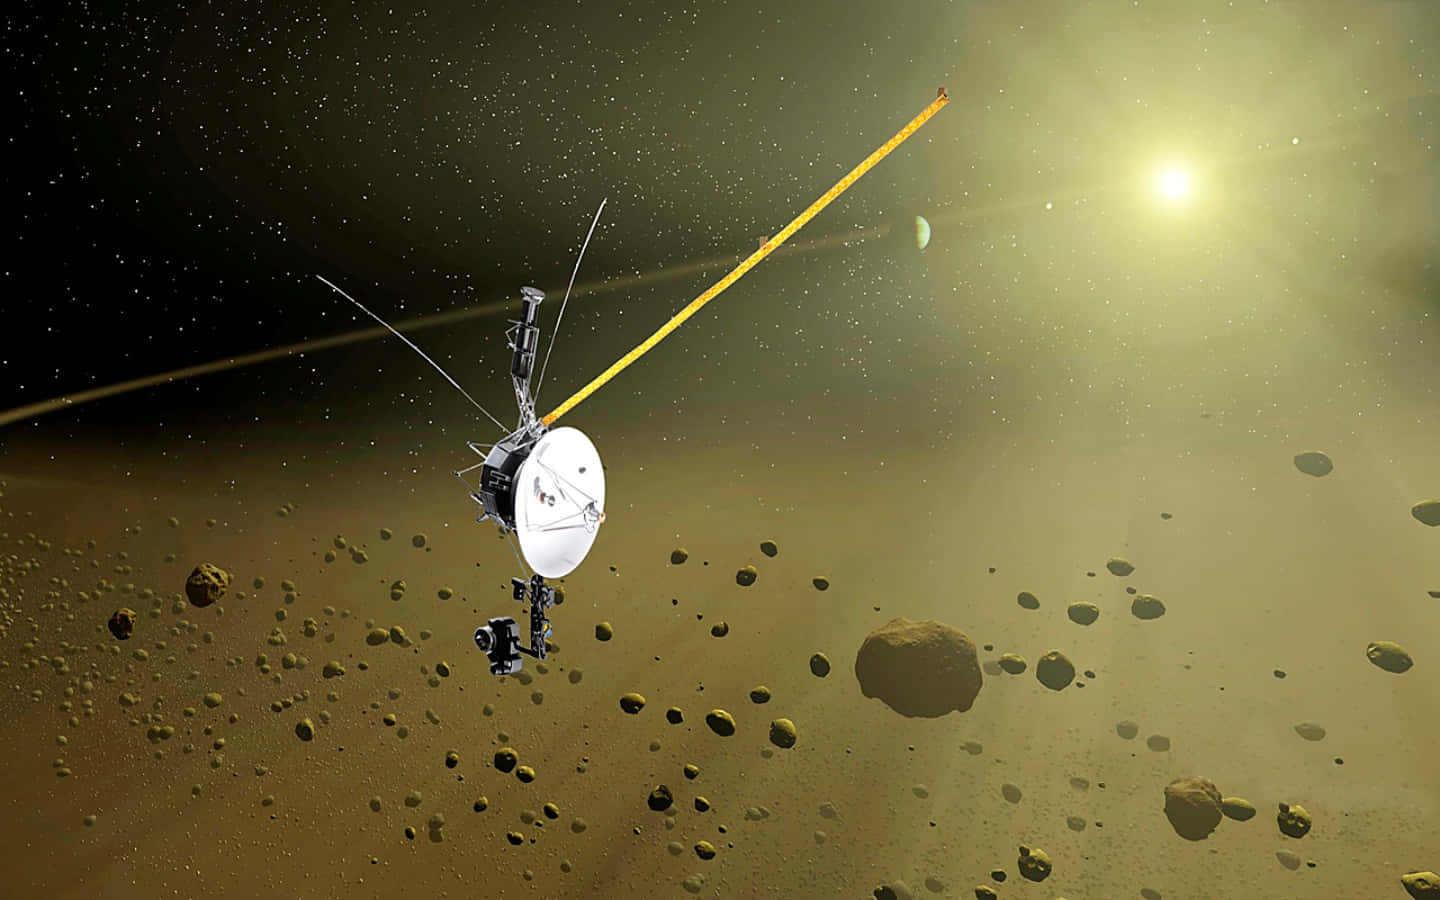 Unaimagen Impresionante De La Misión De La Nave Espacial Voyager